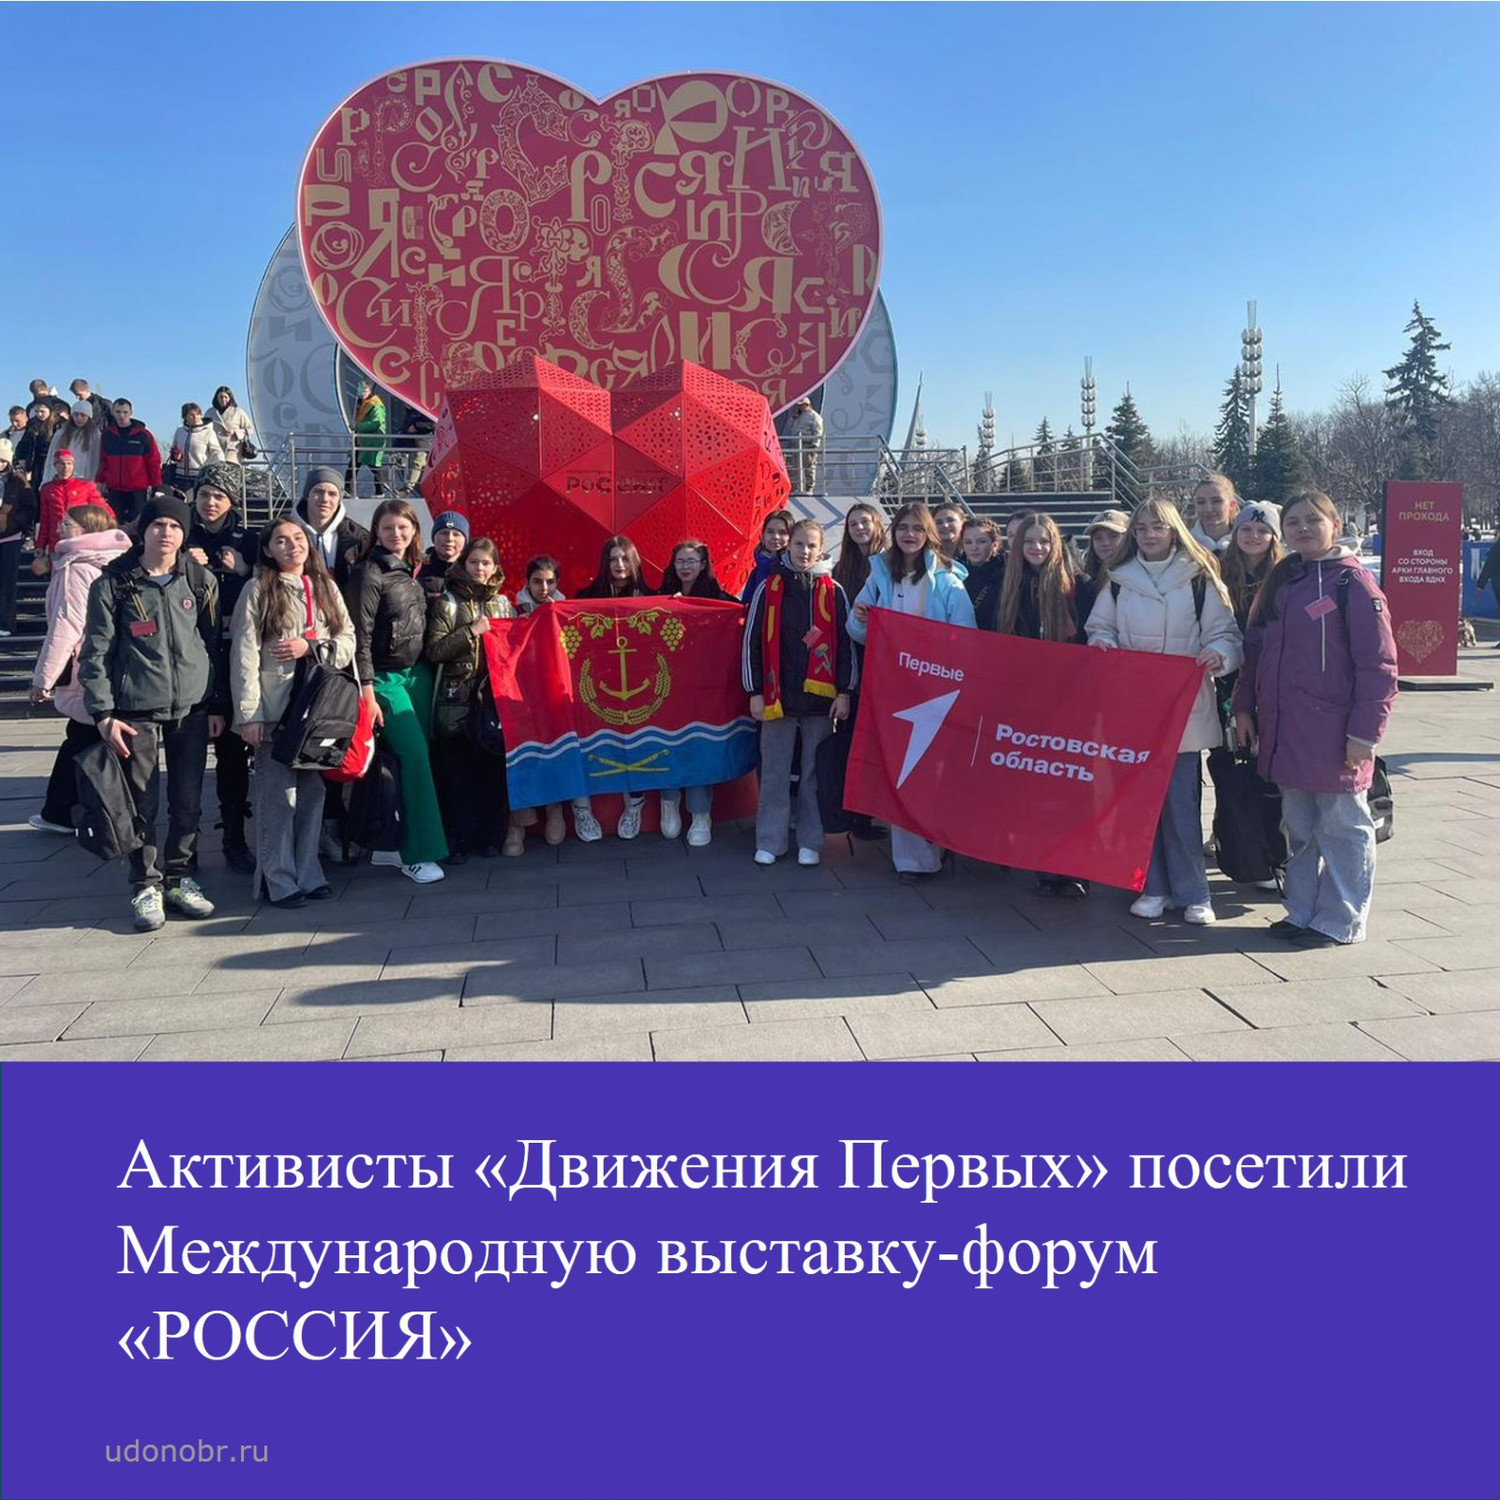 Активисты «Движения Первых» посетили Международную выставку-форум «РОССИЯ»